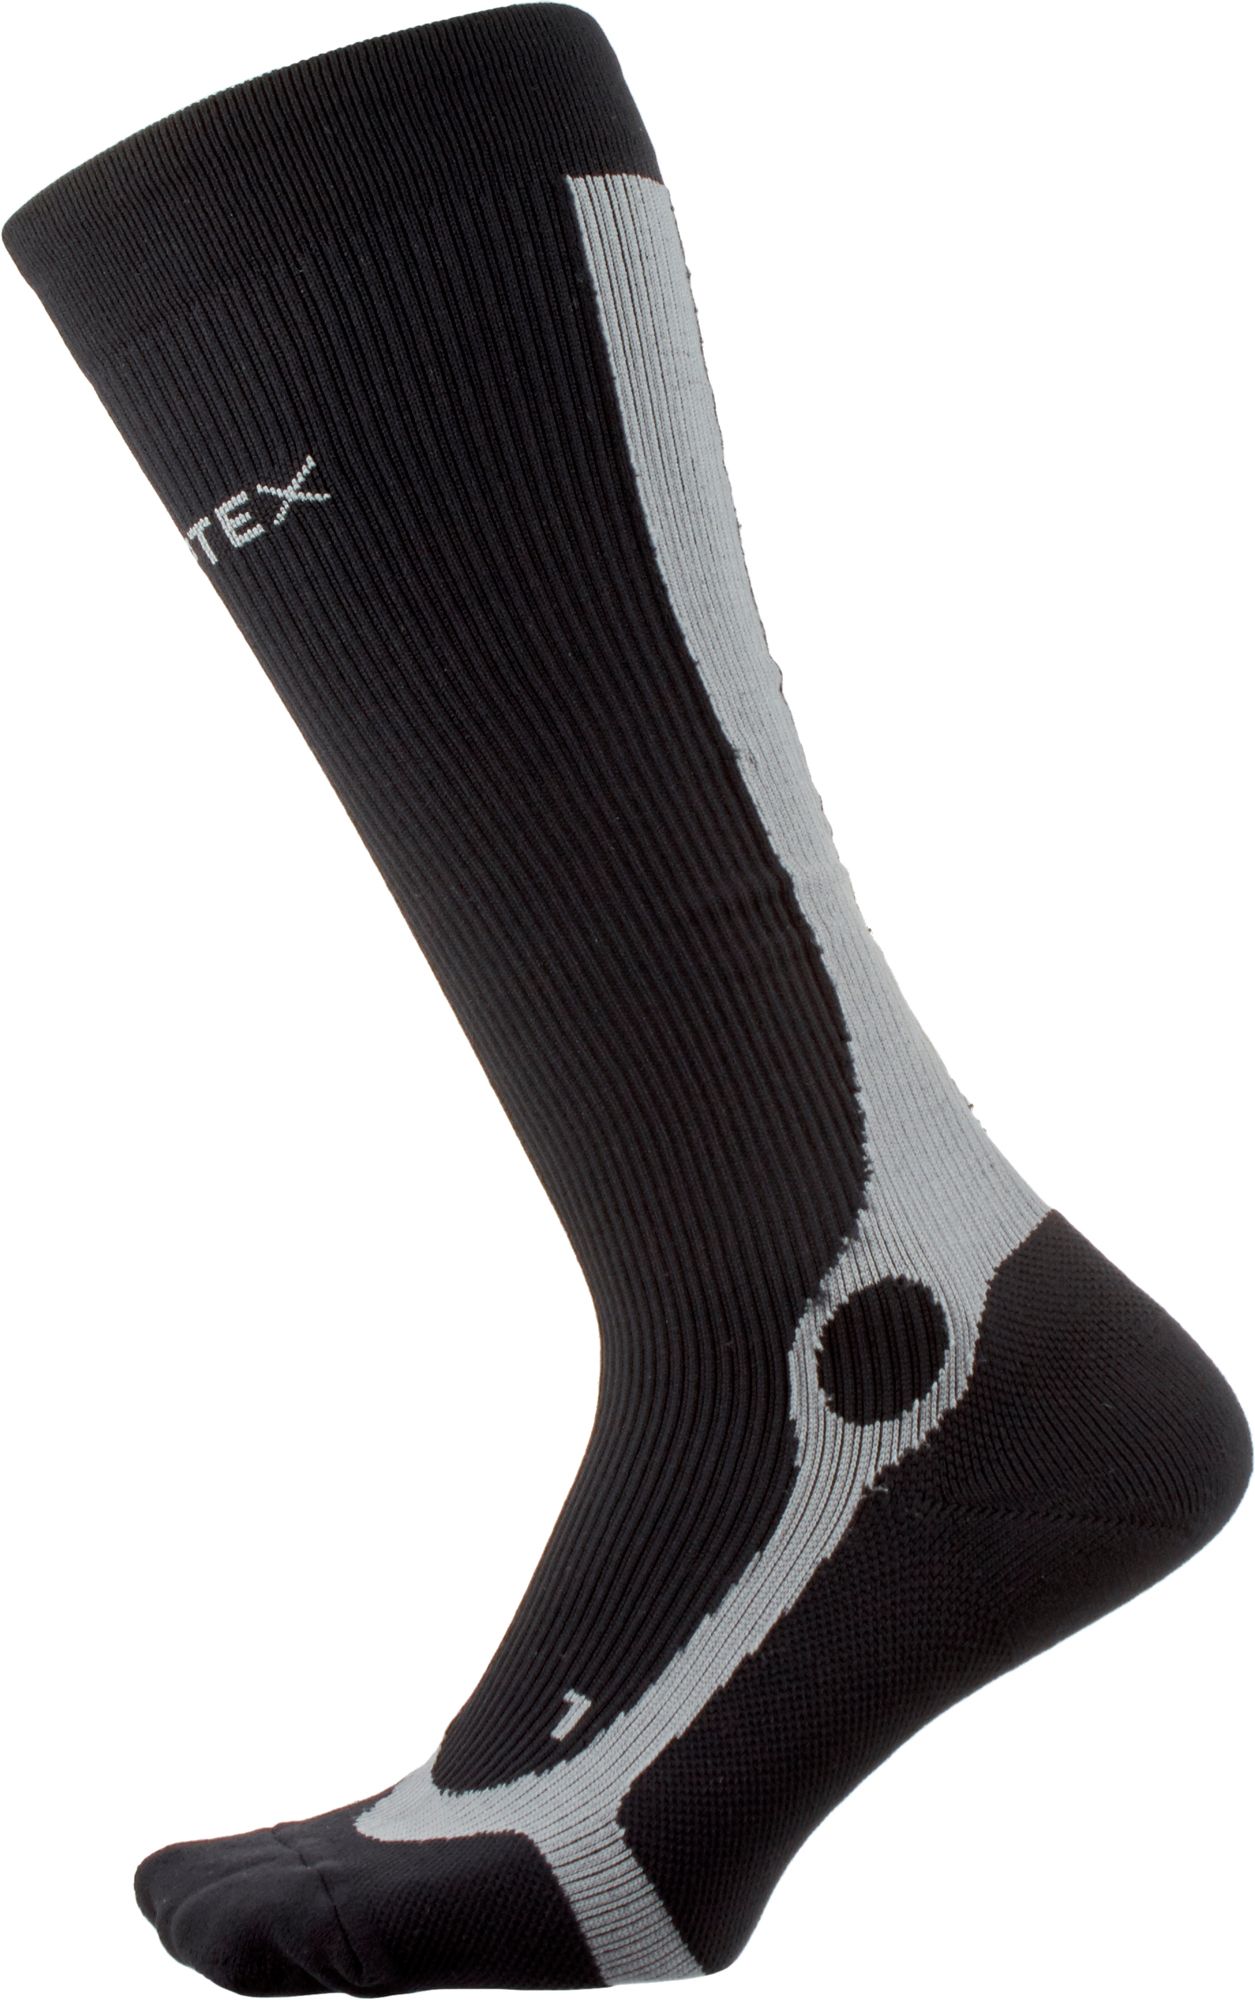 P-Tex Pro Knit Compression Socks - Big Apple Buddy